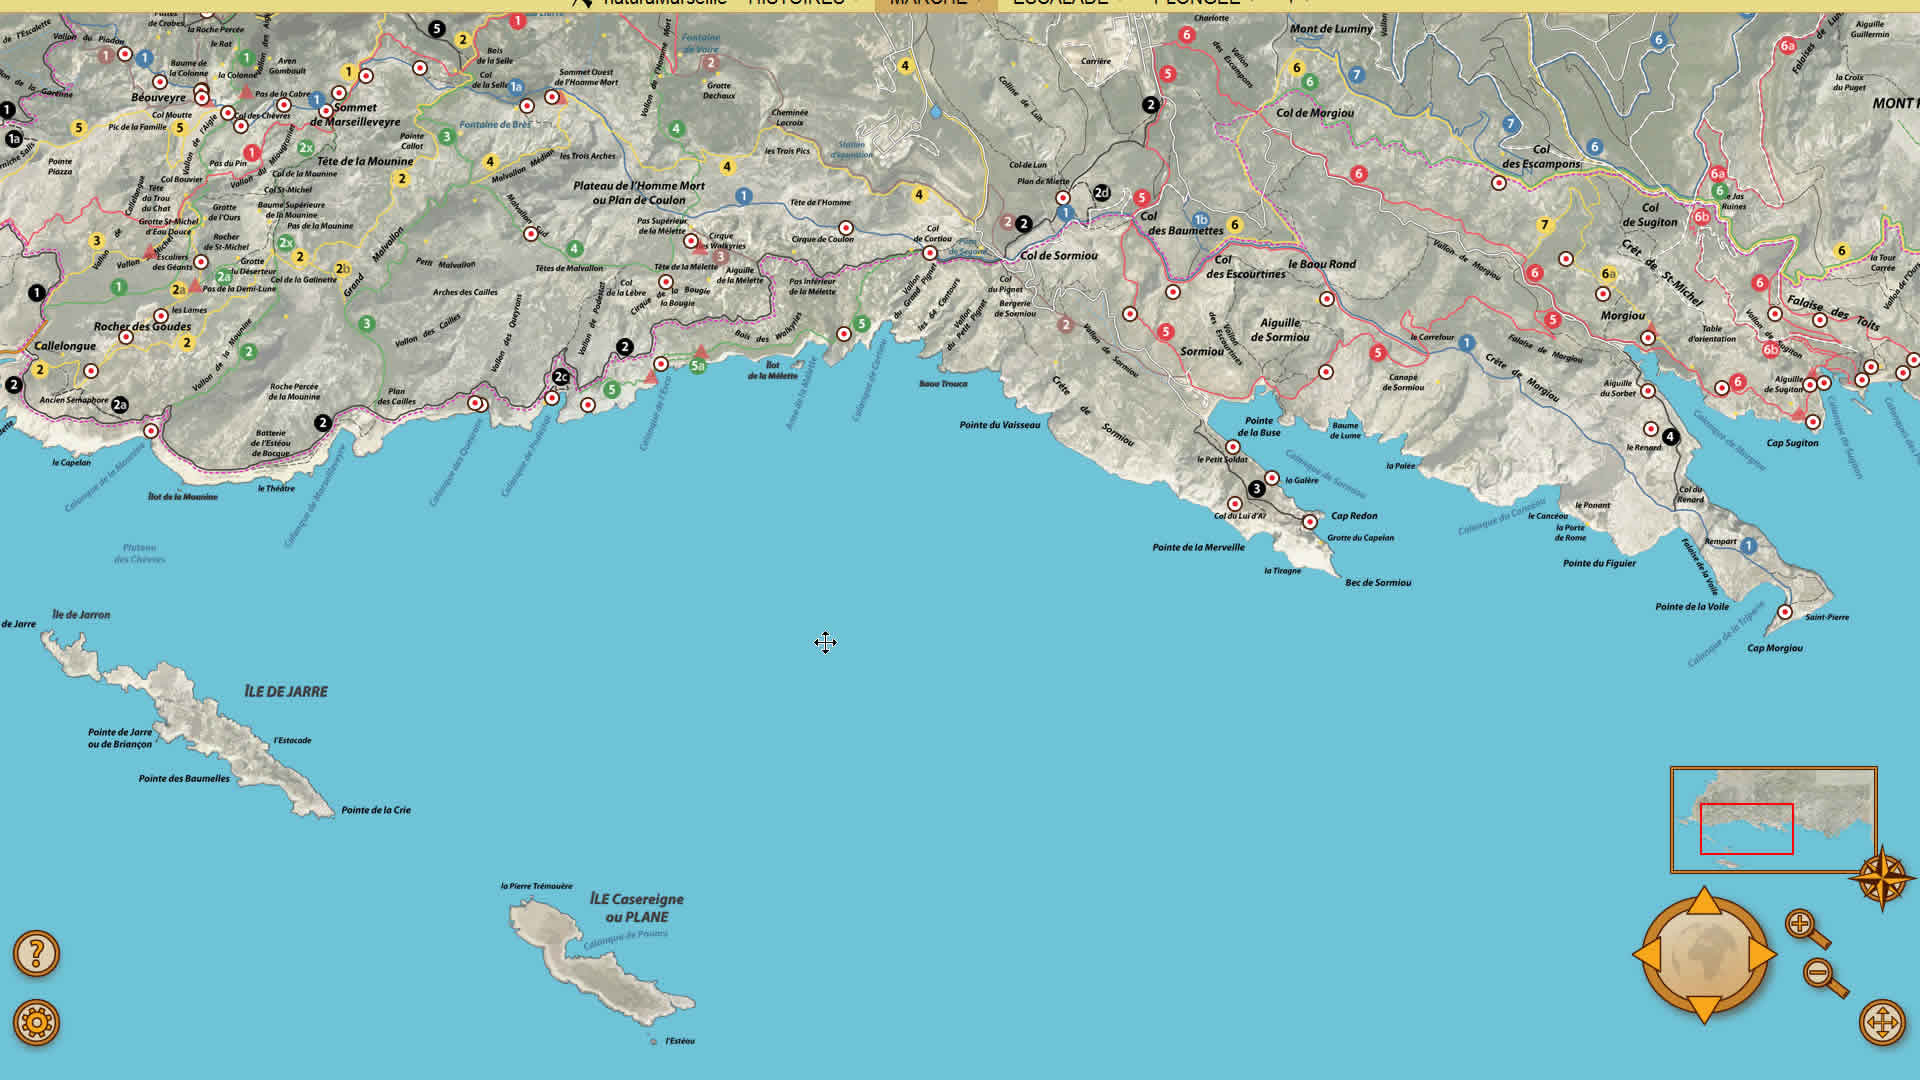 une application cartographique sur mesure<br/>pour découvrir et explorer l'univers des Calanques de Marseille